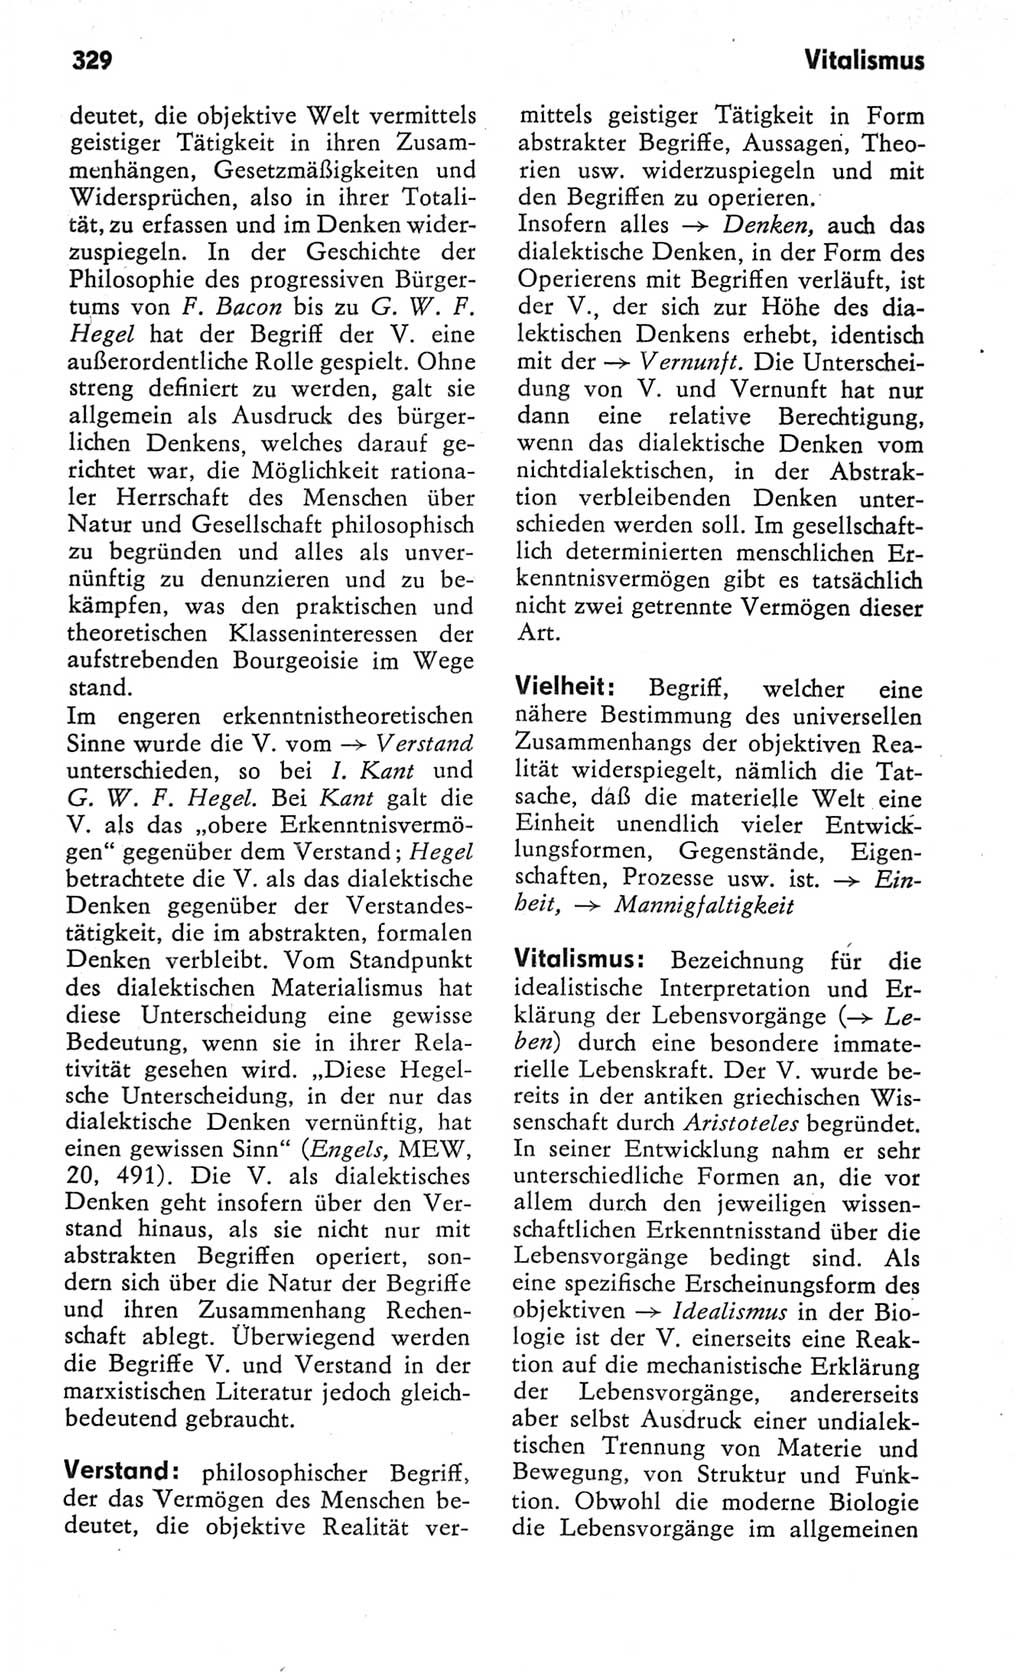 Kleines Wörterbuch der marxistisch-leninistischen Philosophie [Deutsche Demokratische Republik (DDR)] 1982, Seite 329 (Kl. Wb. ML Phil. DDR 1982, S. 329)